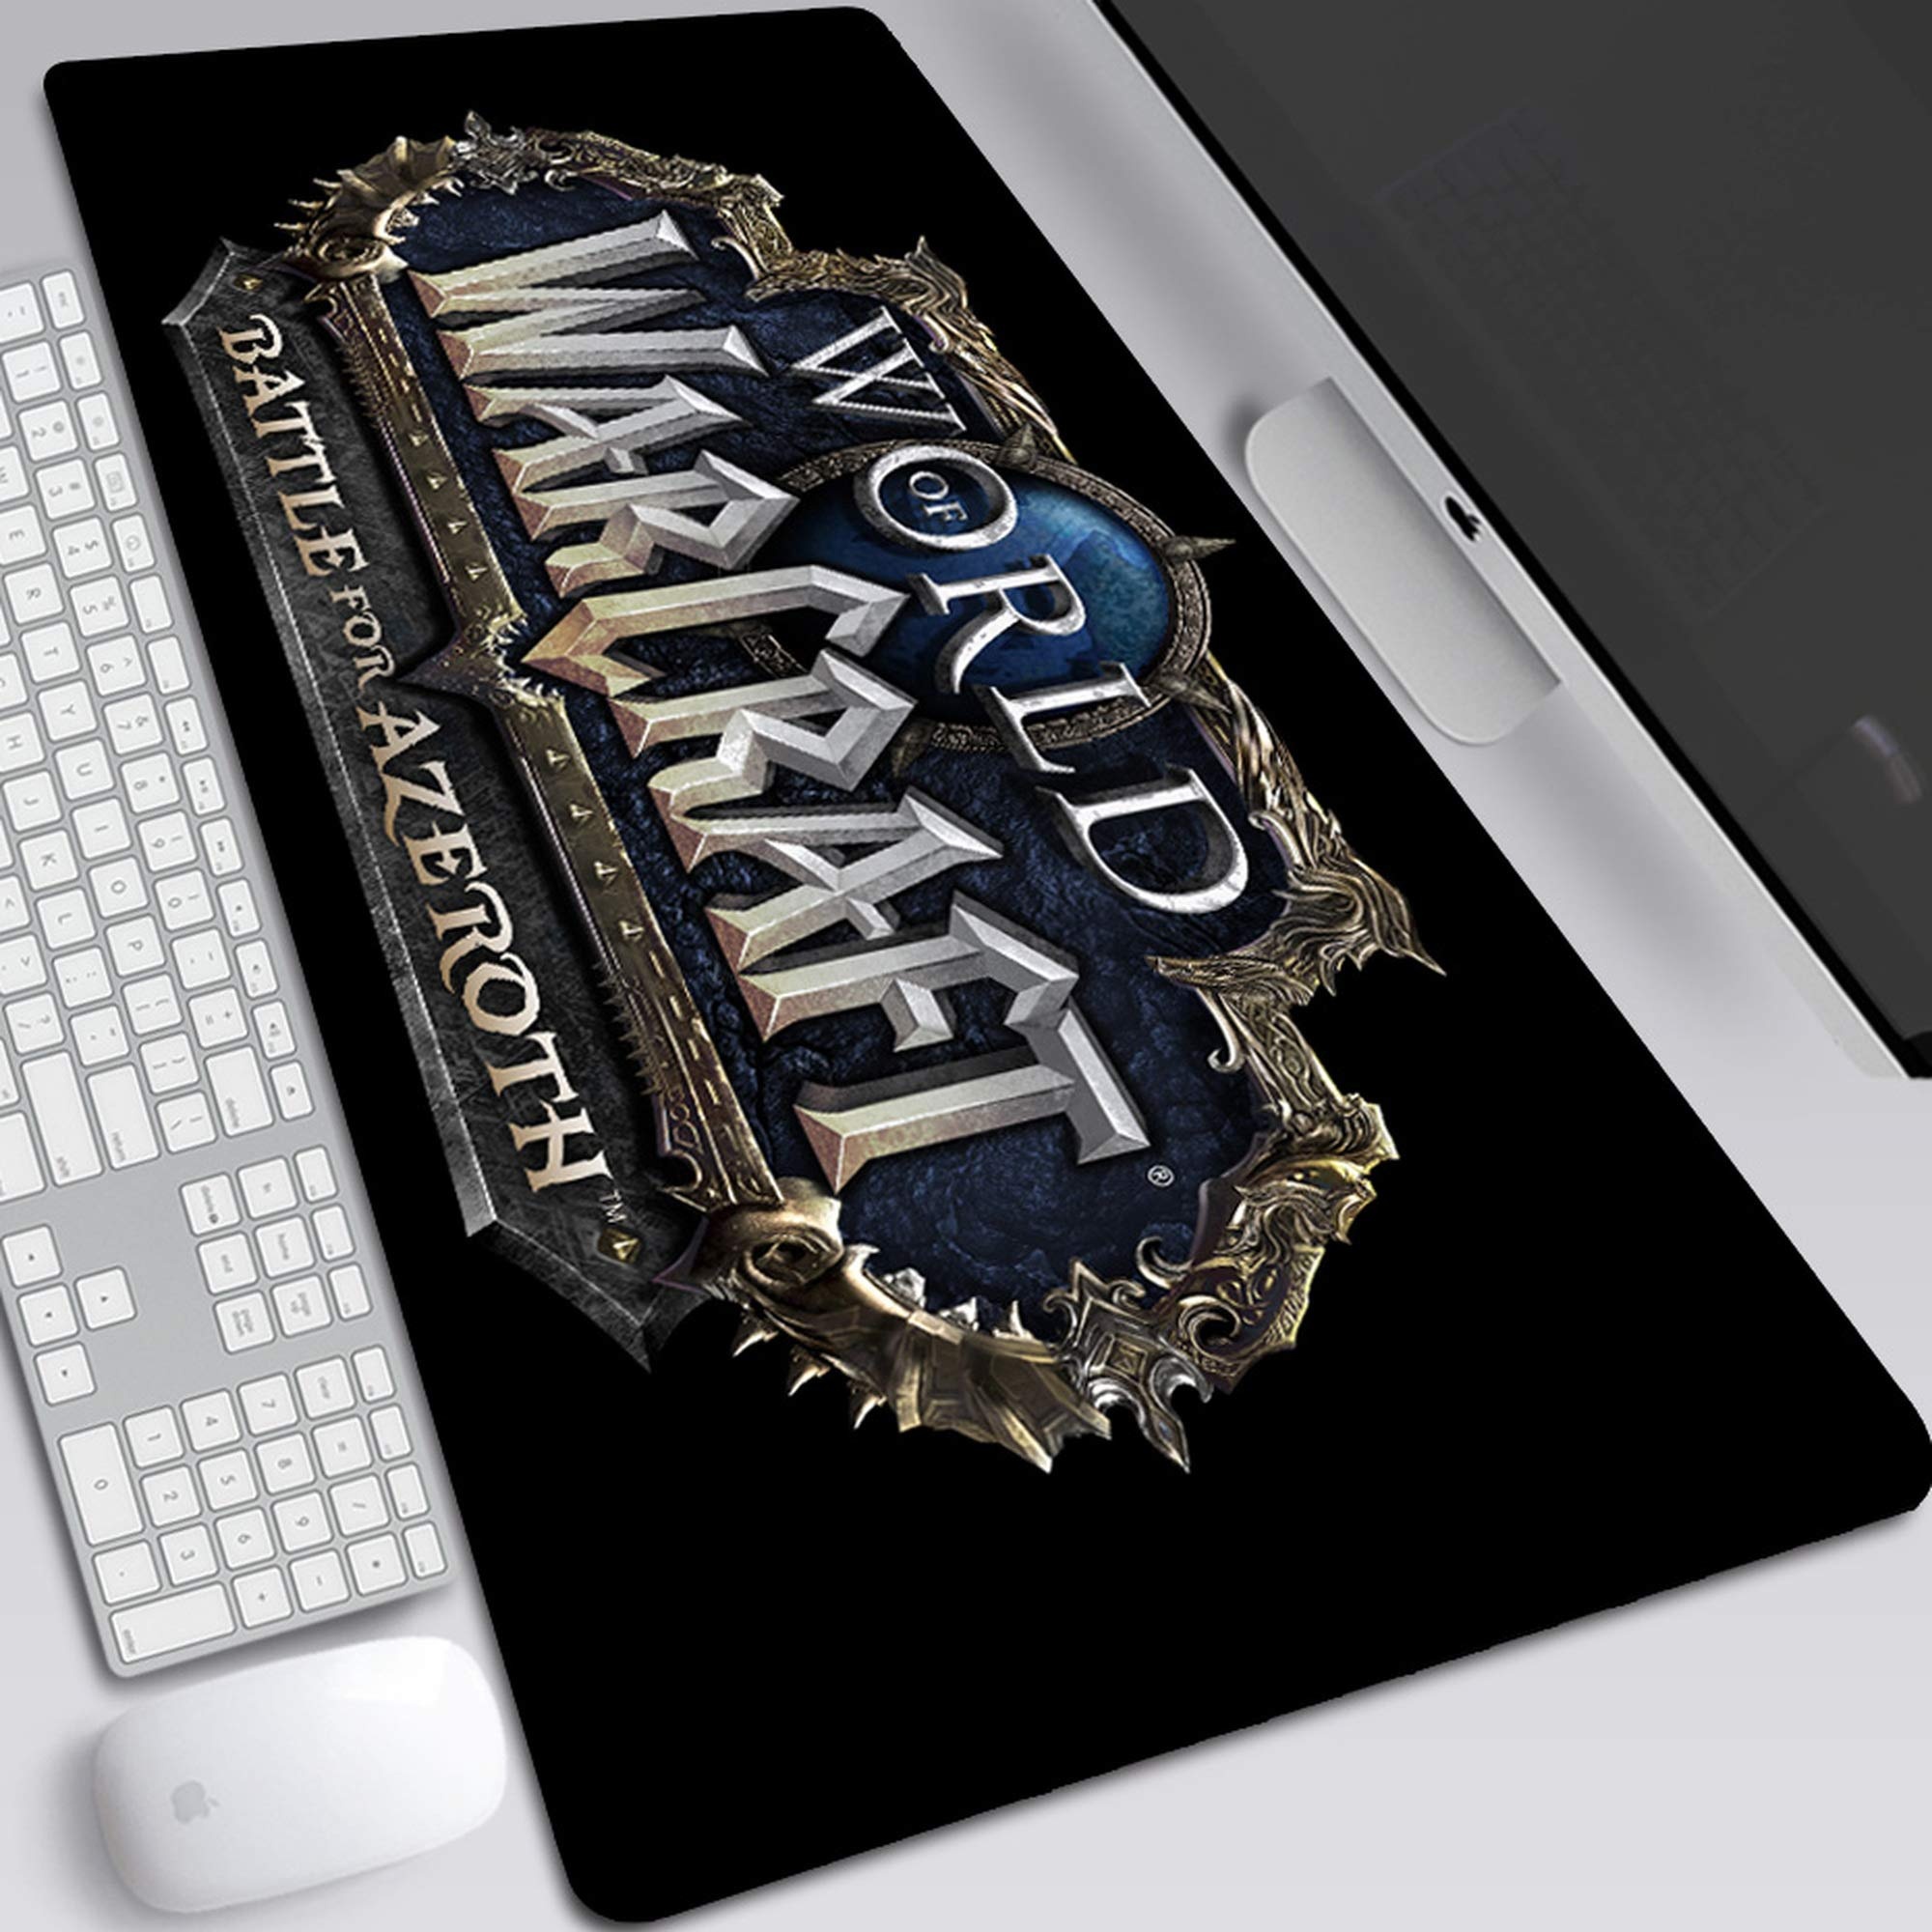 BILIVAN World of Warcraft Battle um Azeroth Mauspad, übergroß, rutschfest, 700 x 300 x 3 mm, 19 Stück